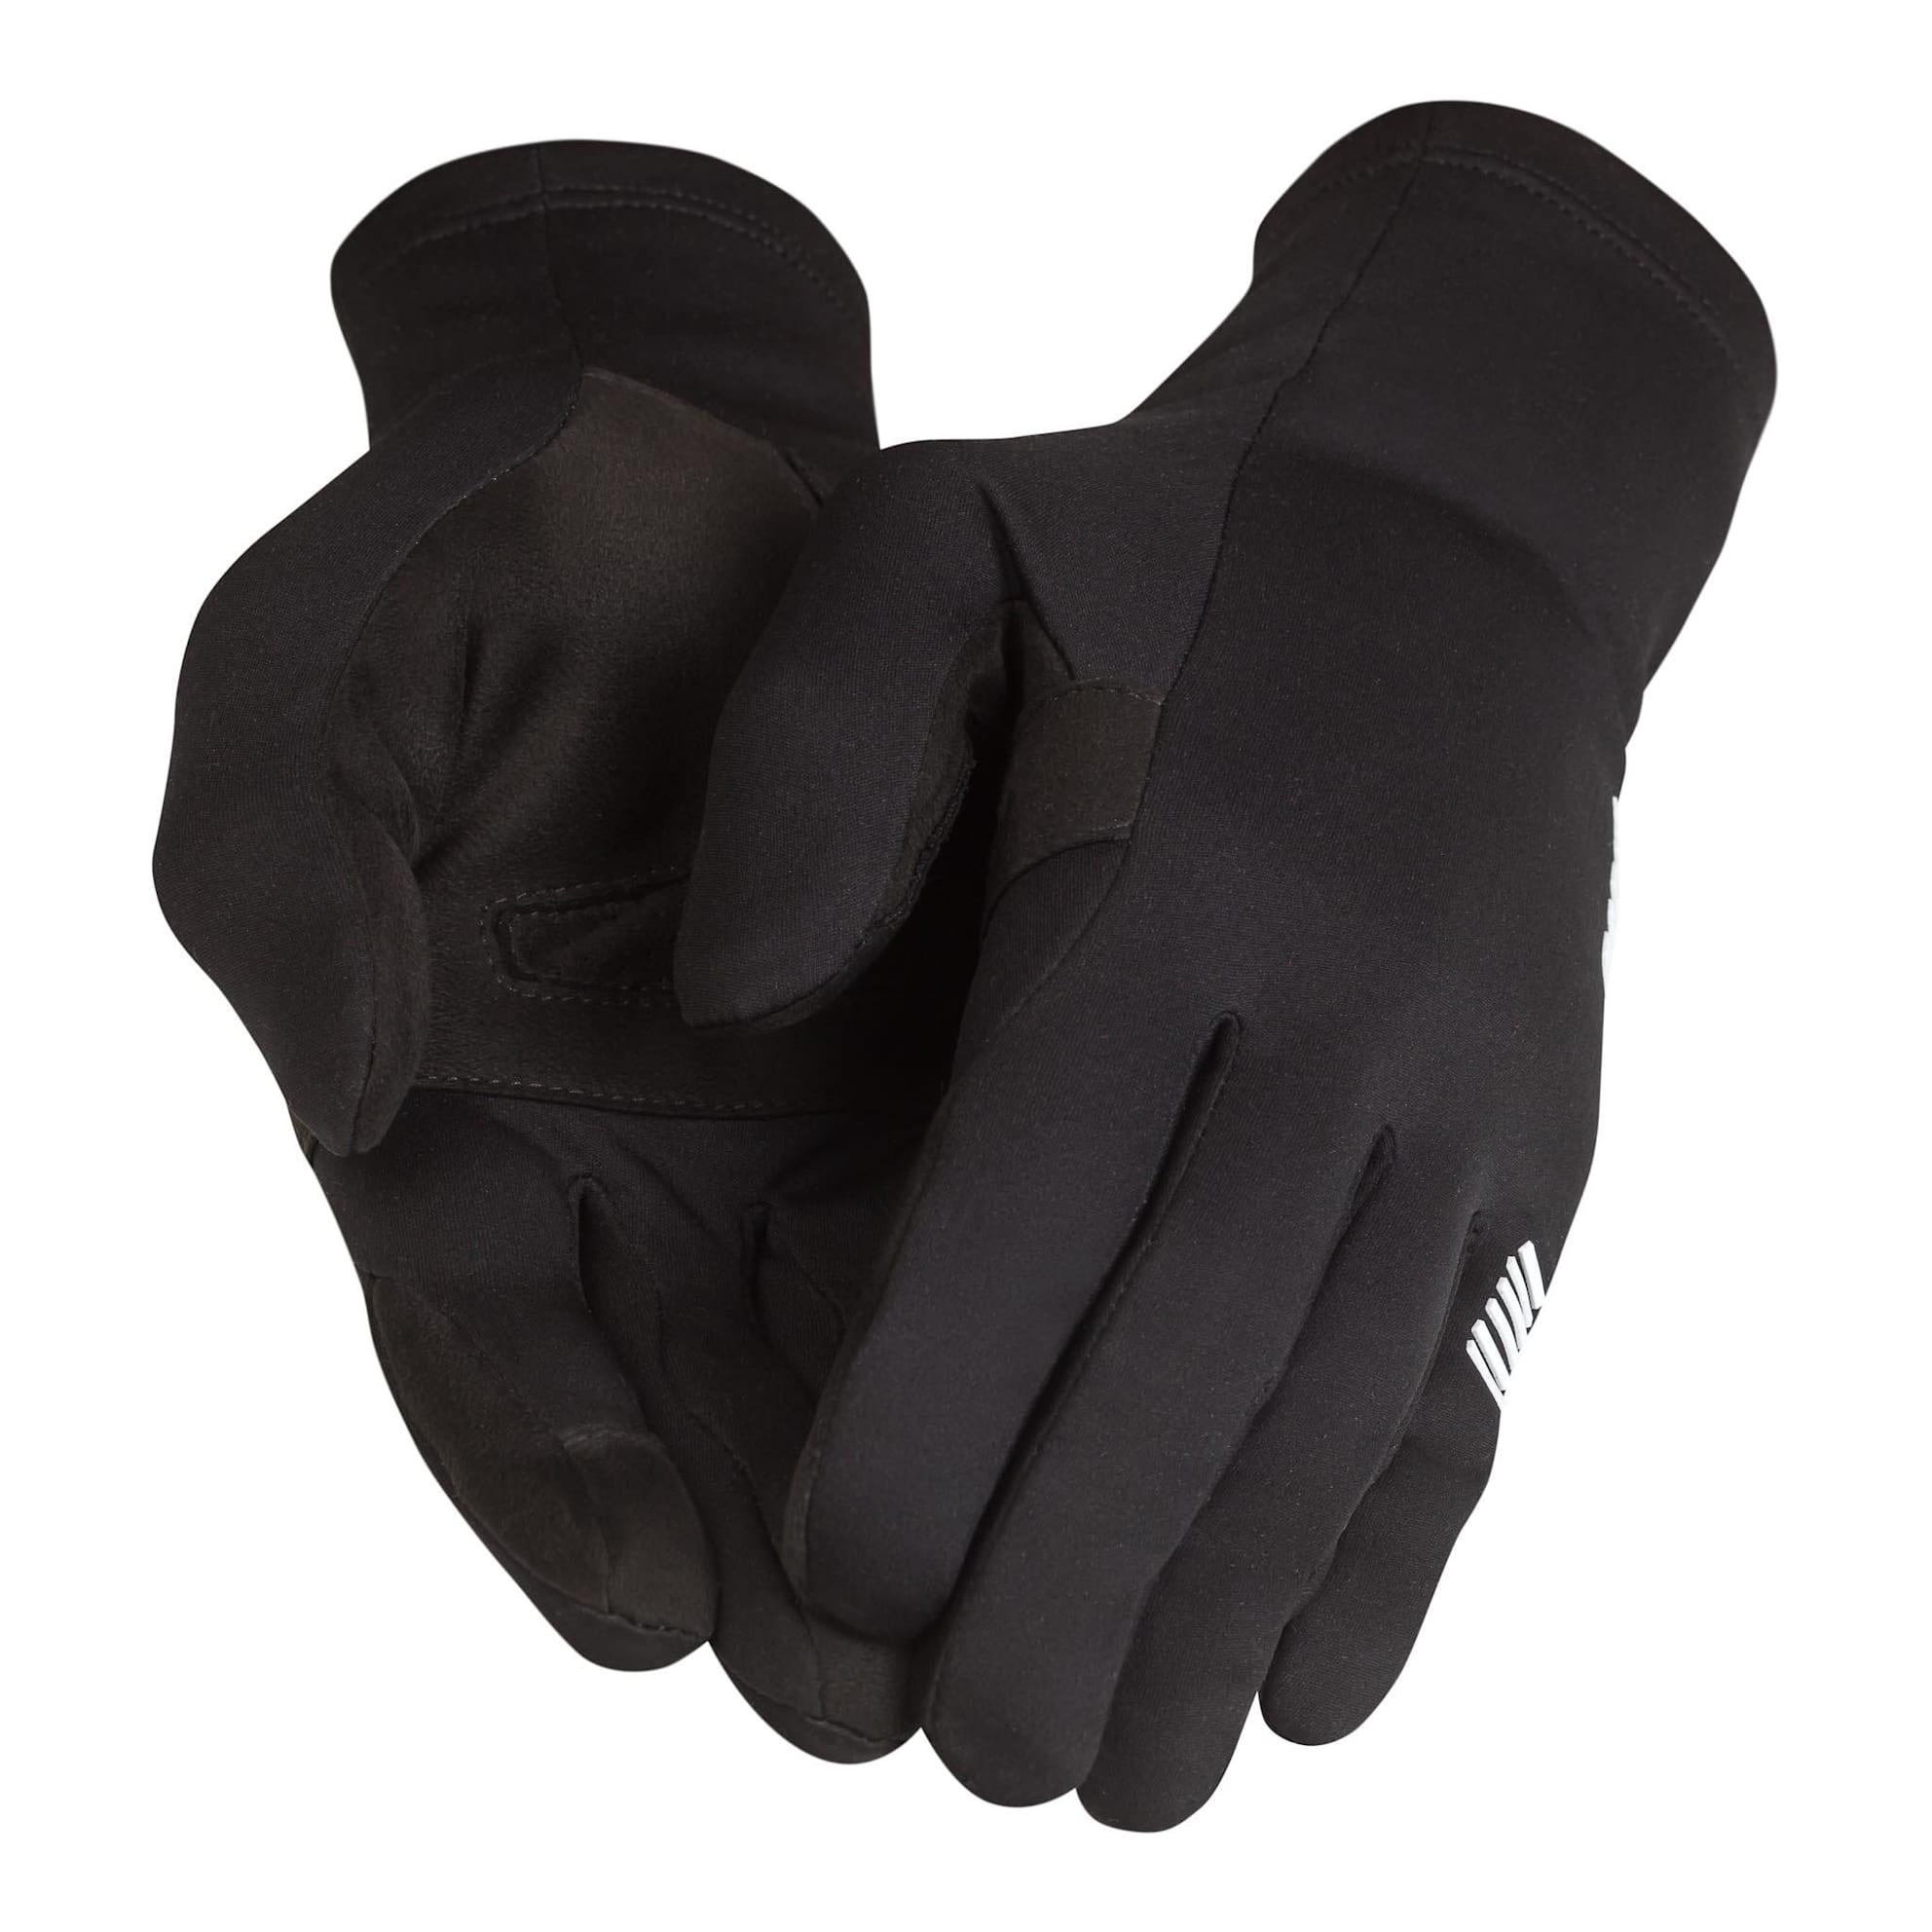 Pro Team Gloves